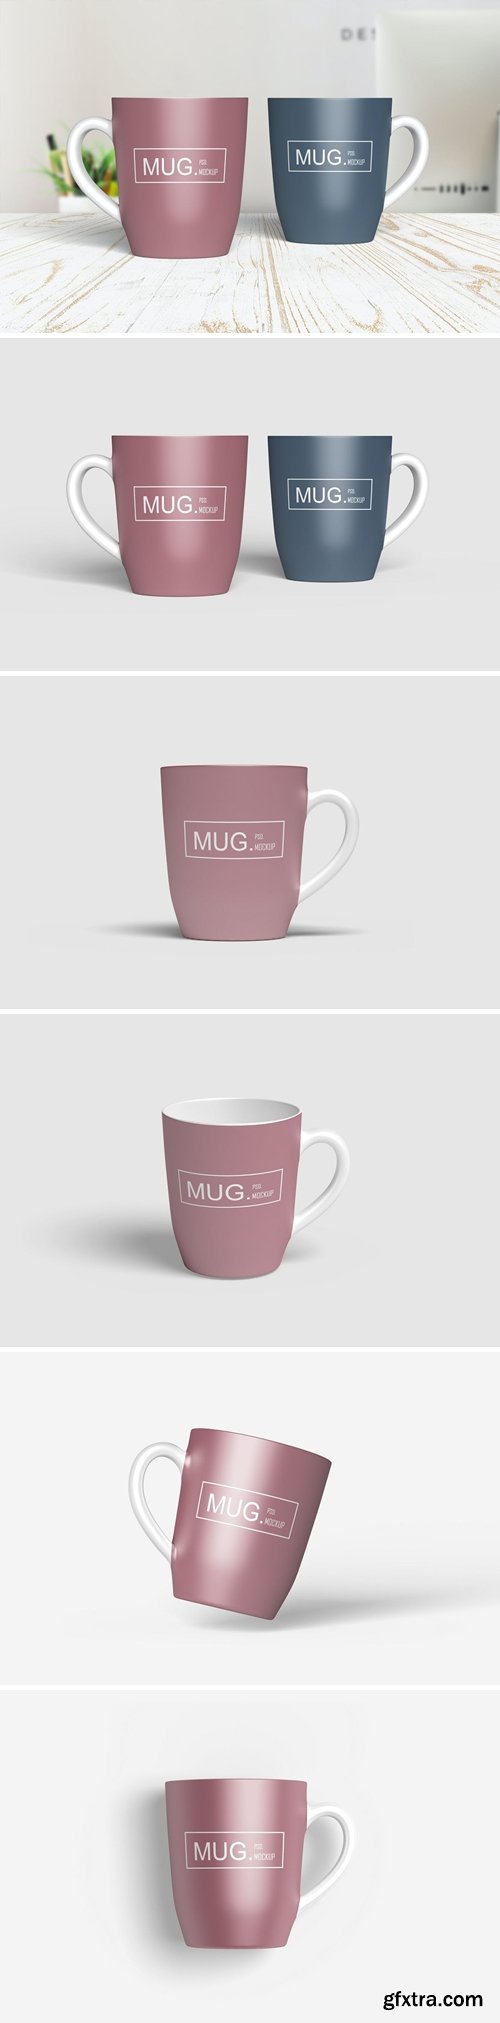 Coffe Mug Mockup